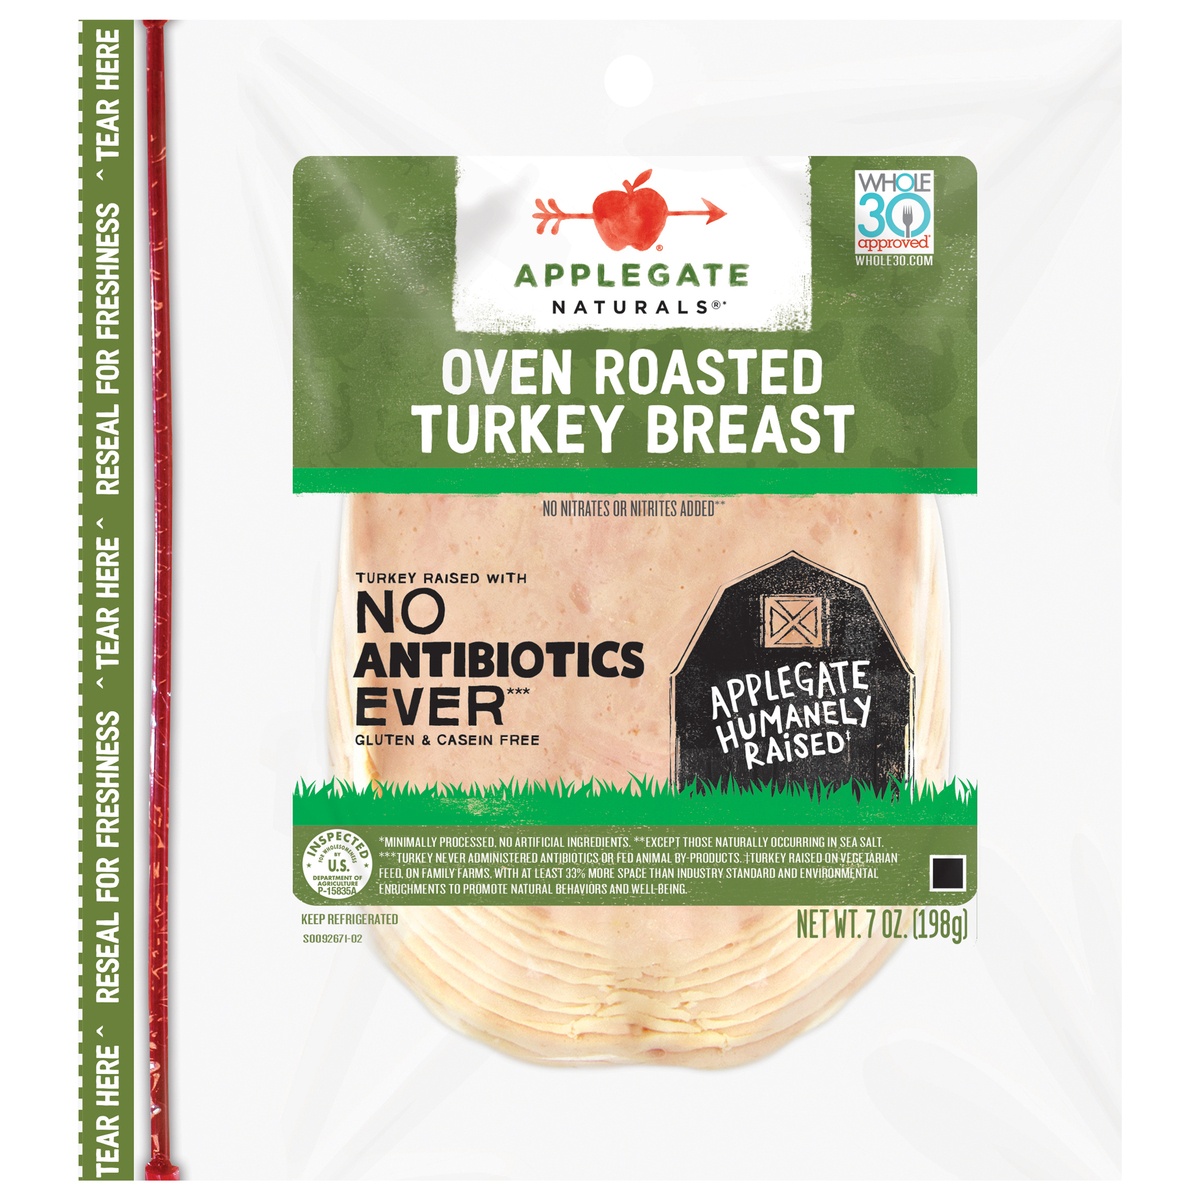 slide 9 of 9, Applegate Natural Oven Roasted Turkey Breast Sliced, 7.0 oz